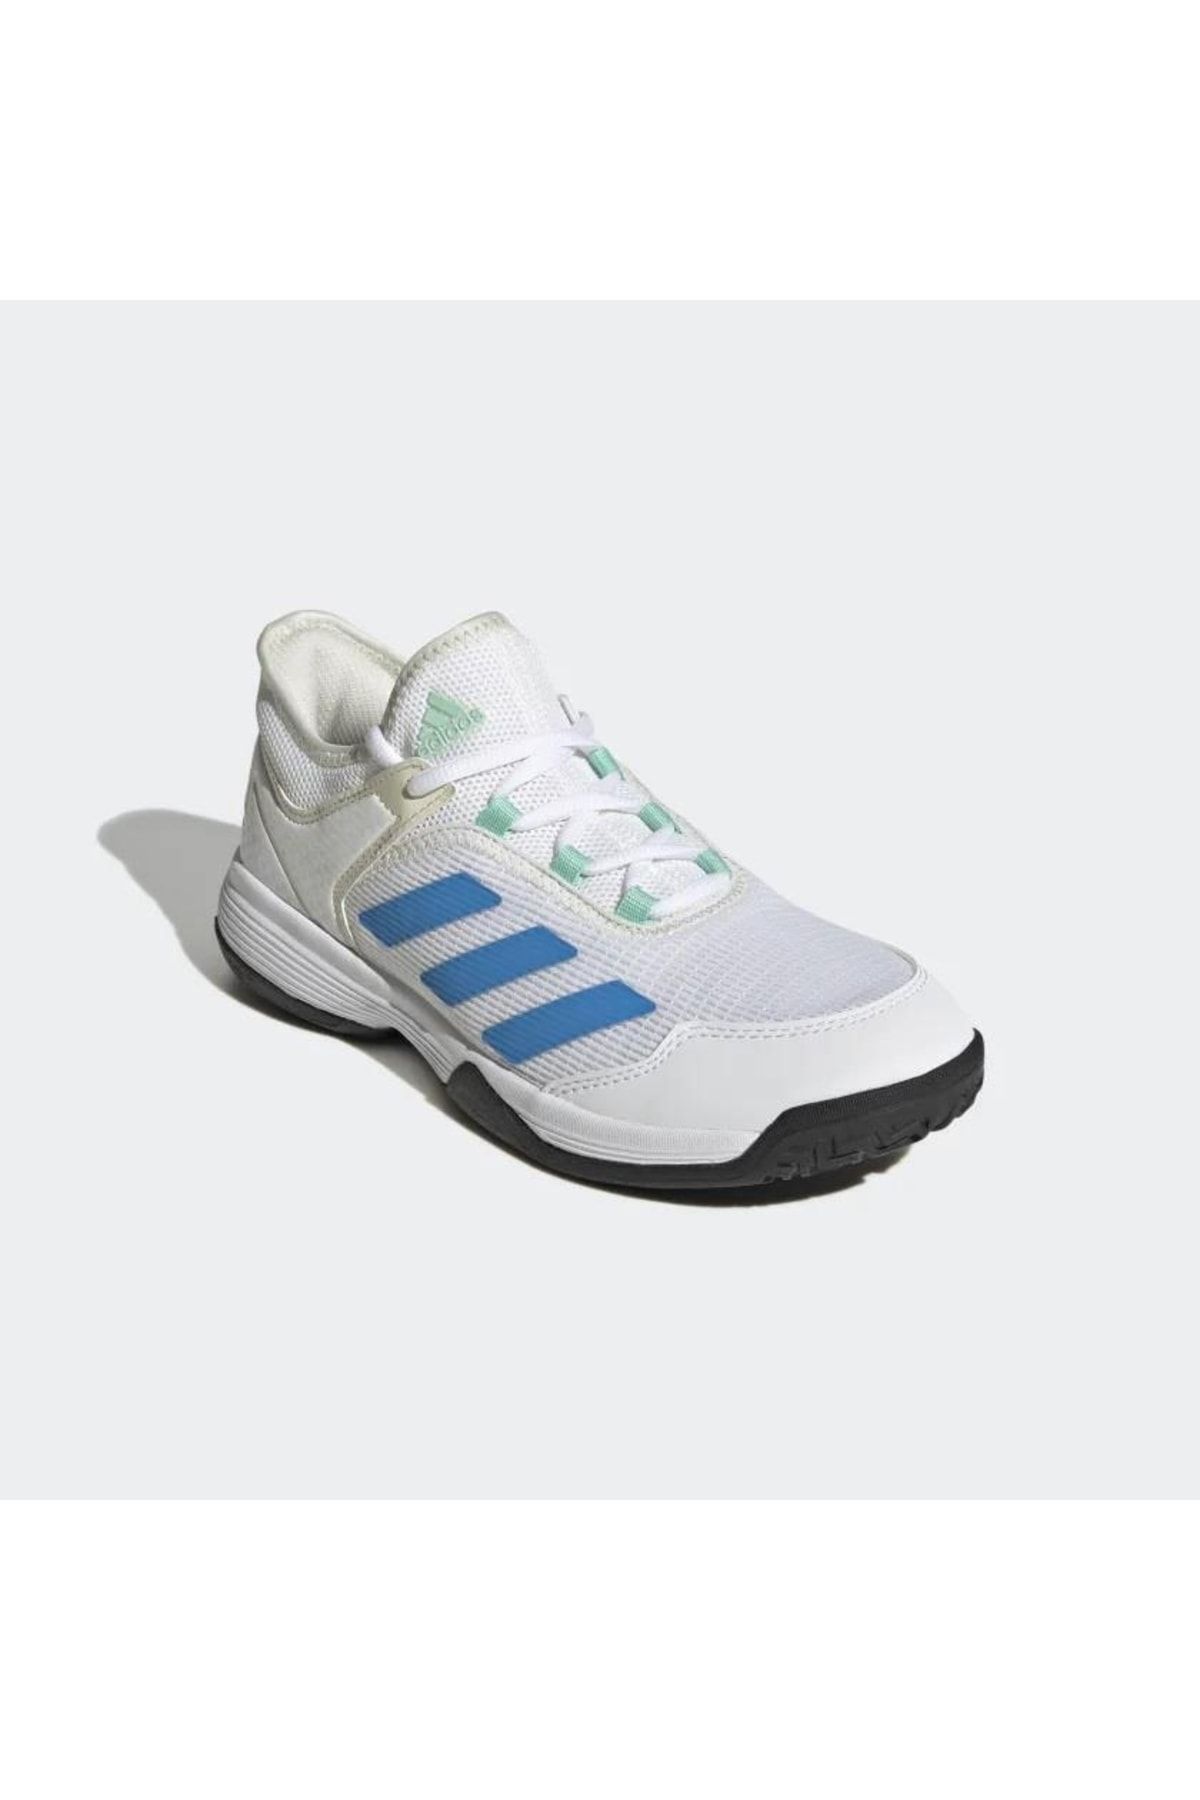 adidas Gy4020 Adizero Beyaz Çocuk Tenis Ayakkabısı